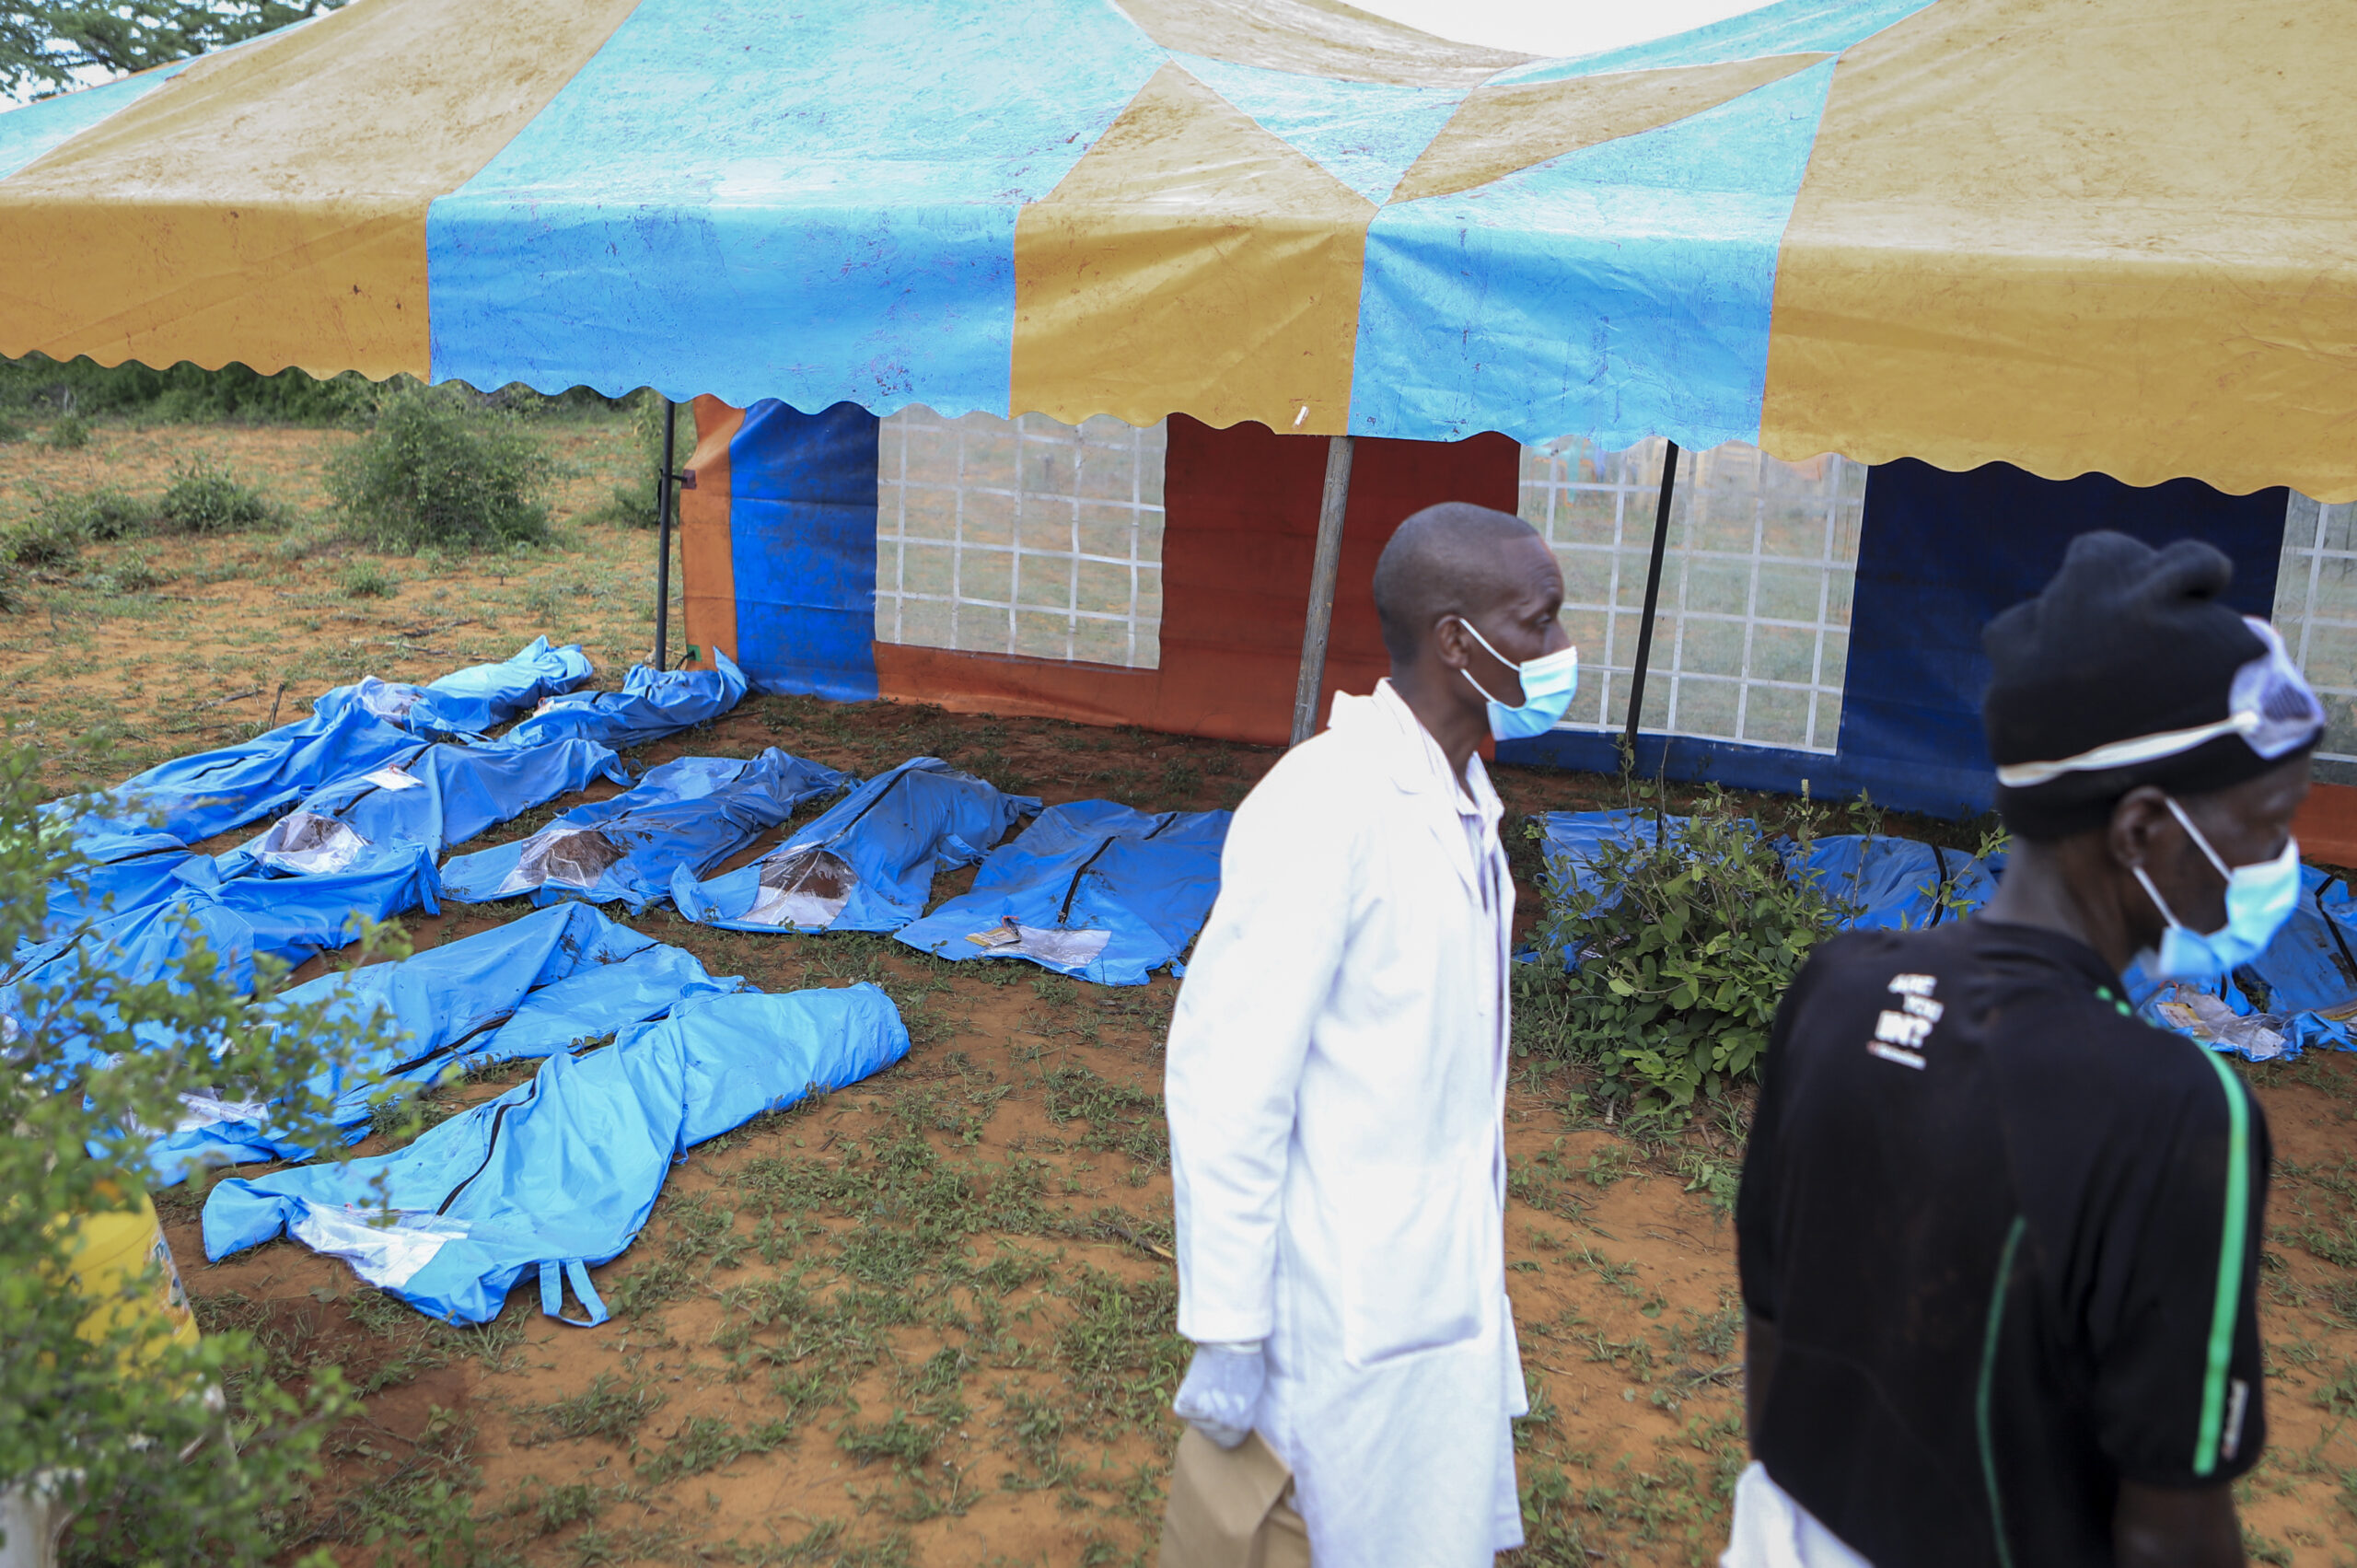 Leichensäcke liegen vor einem Zelt in Kenia. Dort wurden die Opfer einer Sekte exhumiert